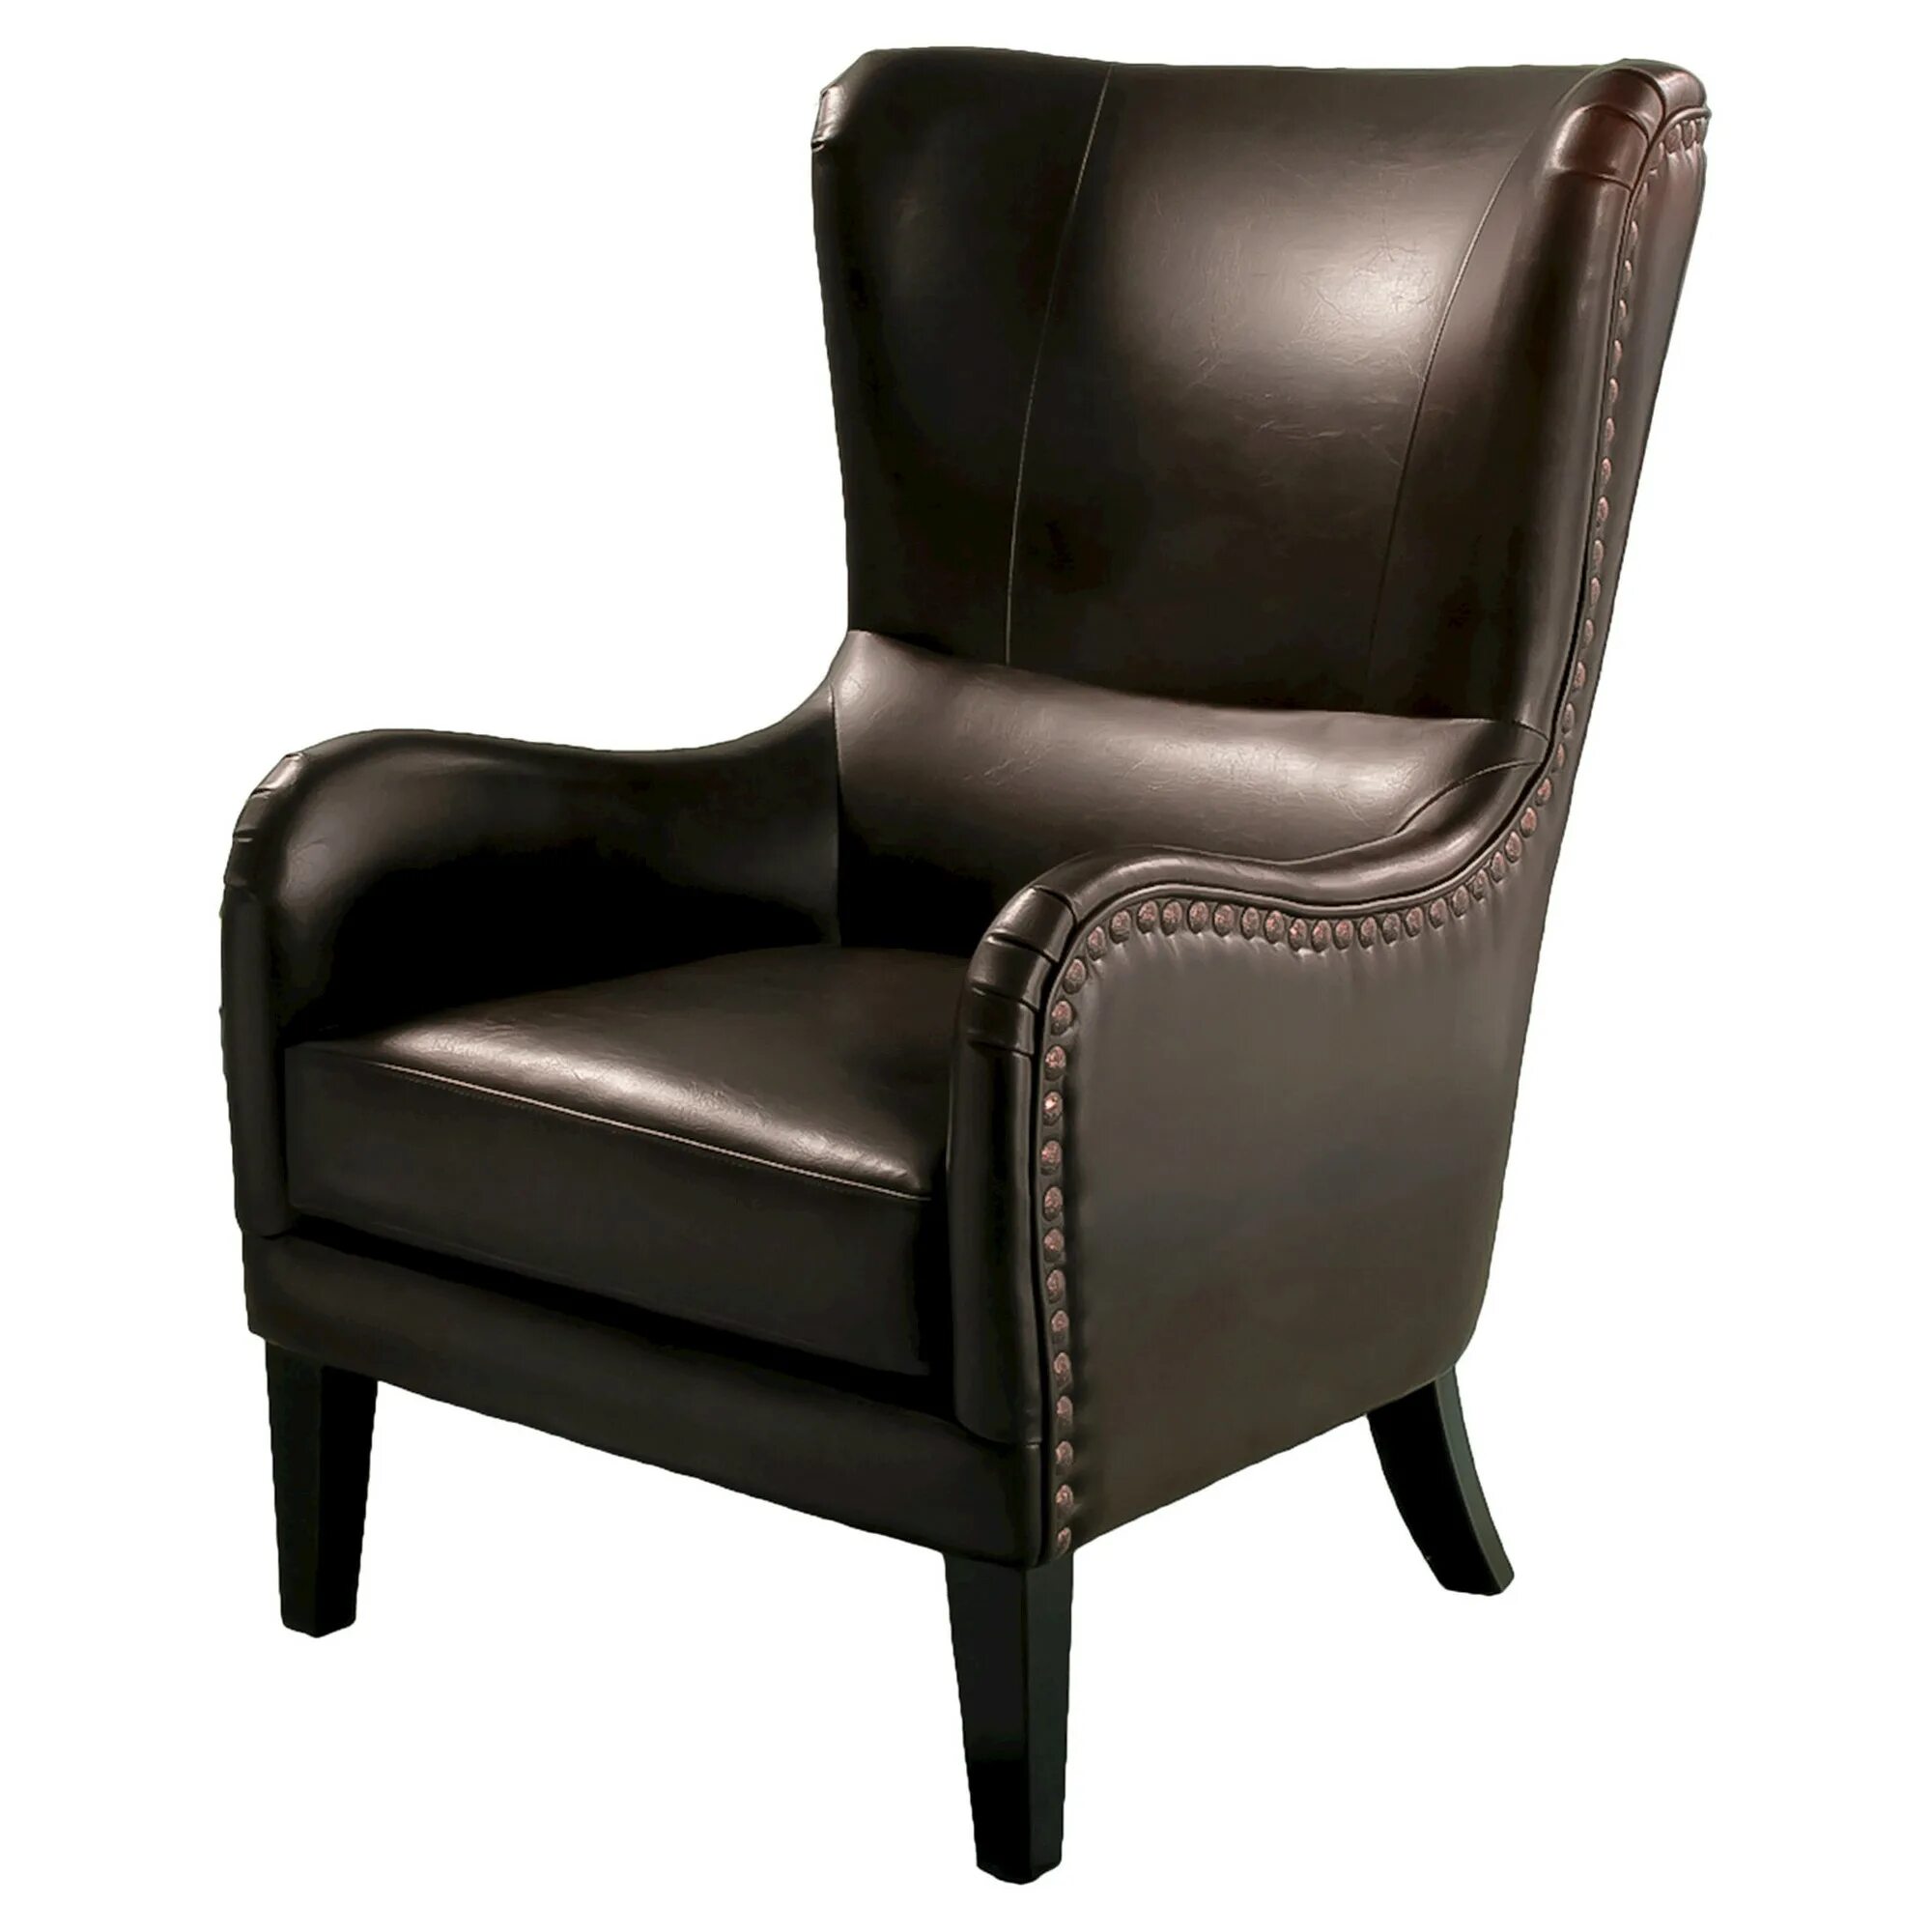 Chairs brown. Кресло Savoy Leather Chair. Кресло Caramel Leather & Textiles Armchair. Кресло Лоренцо Элегия. Кресло Henning Club Chair.